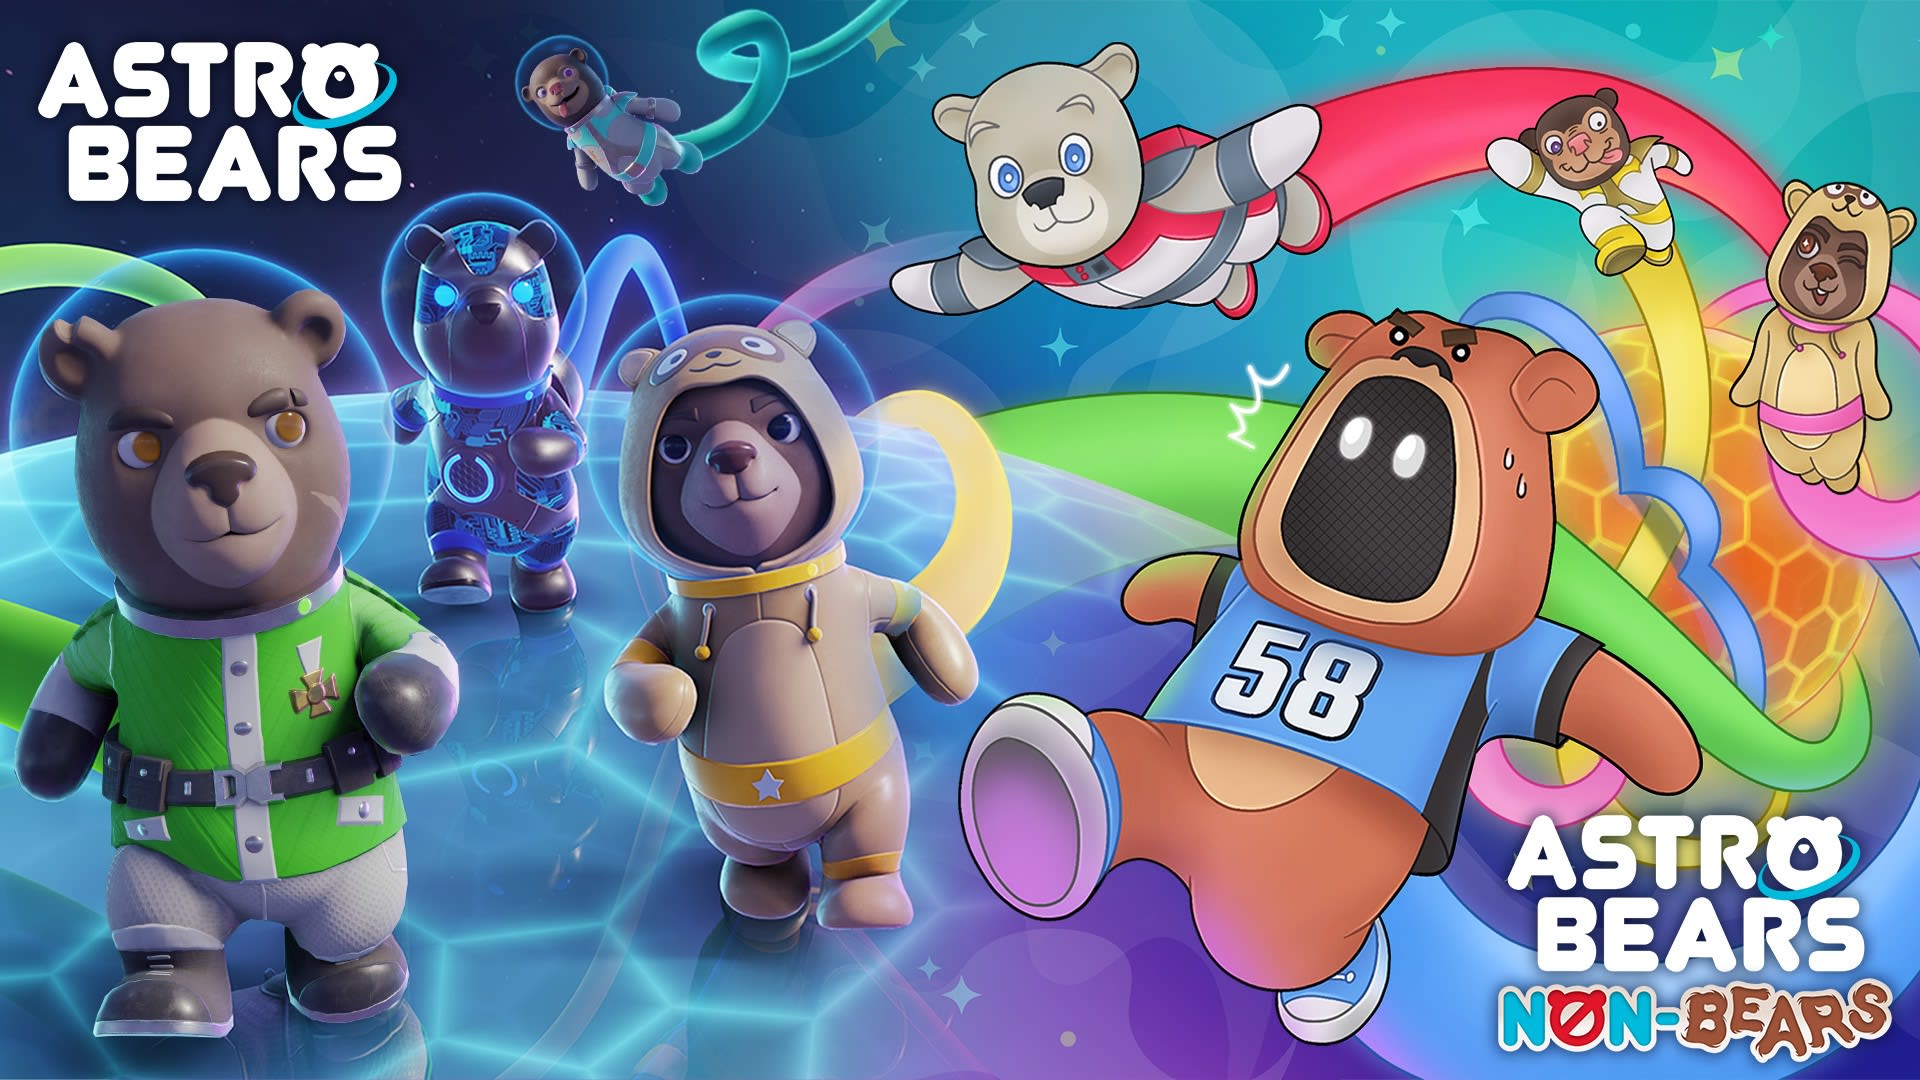 Astro Bears + Non-Bears DLC